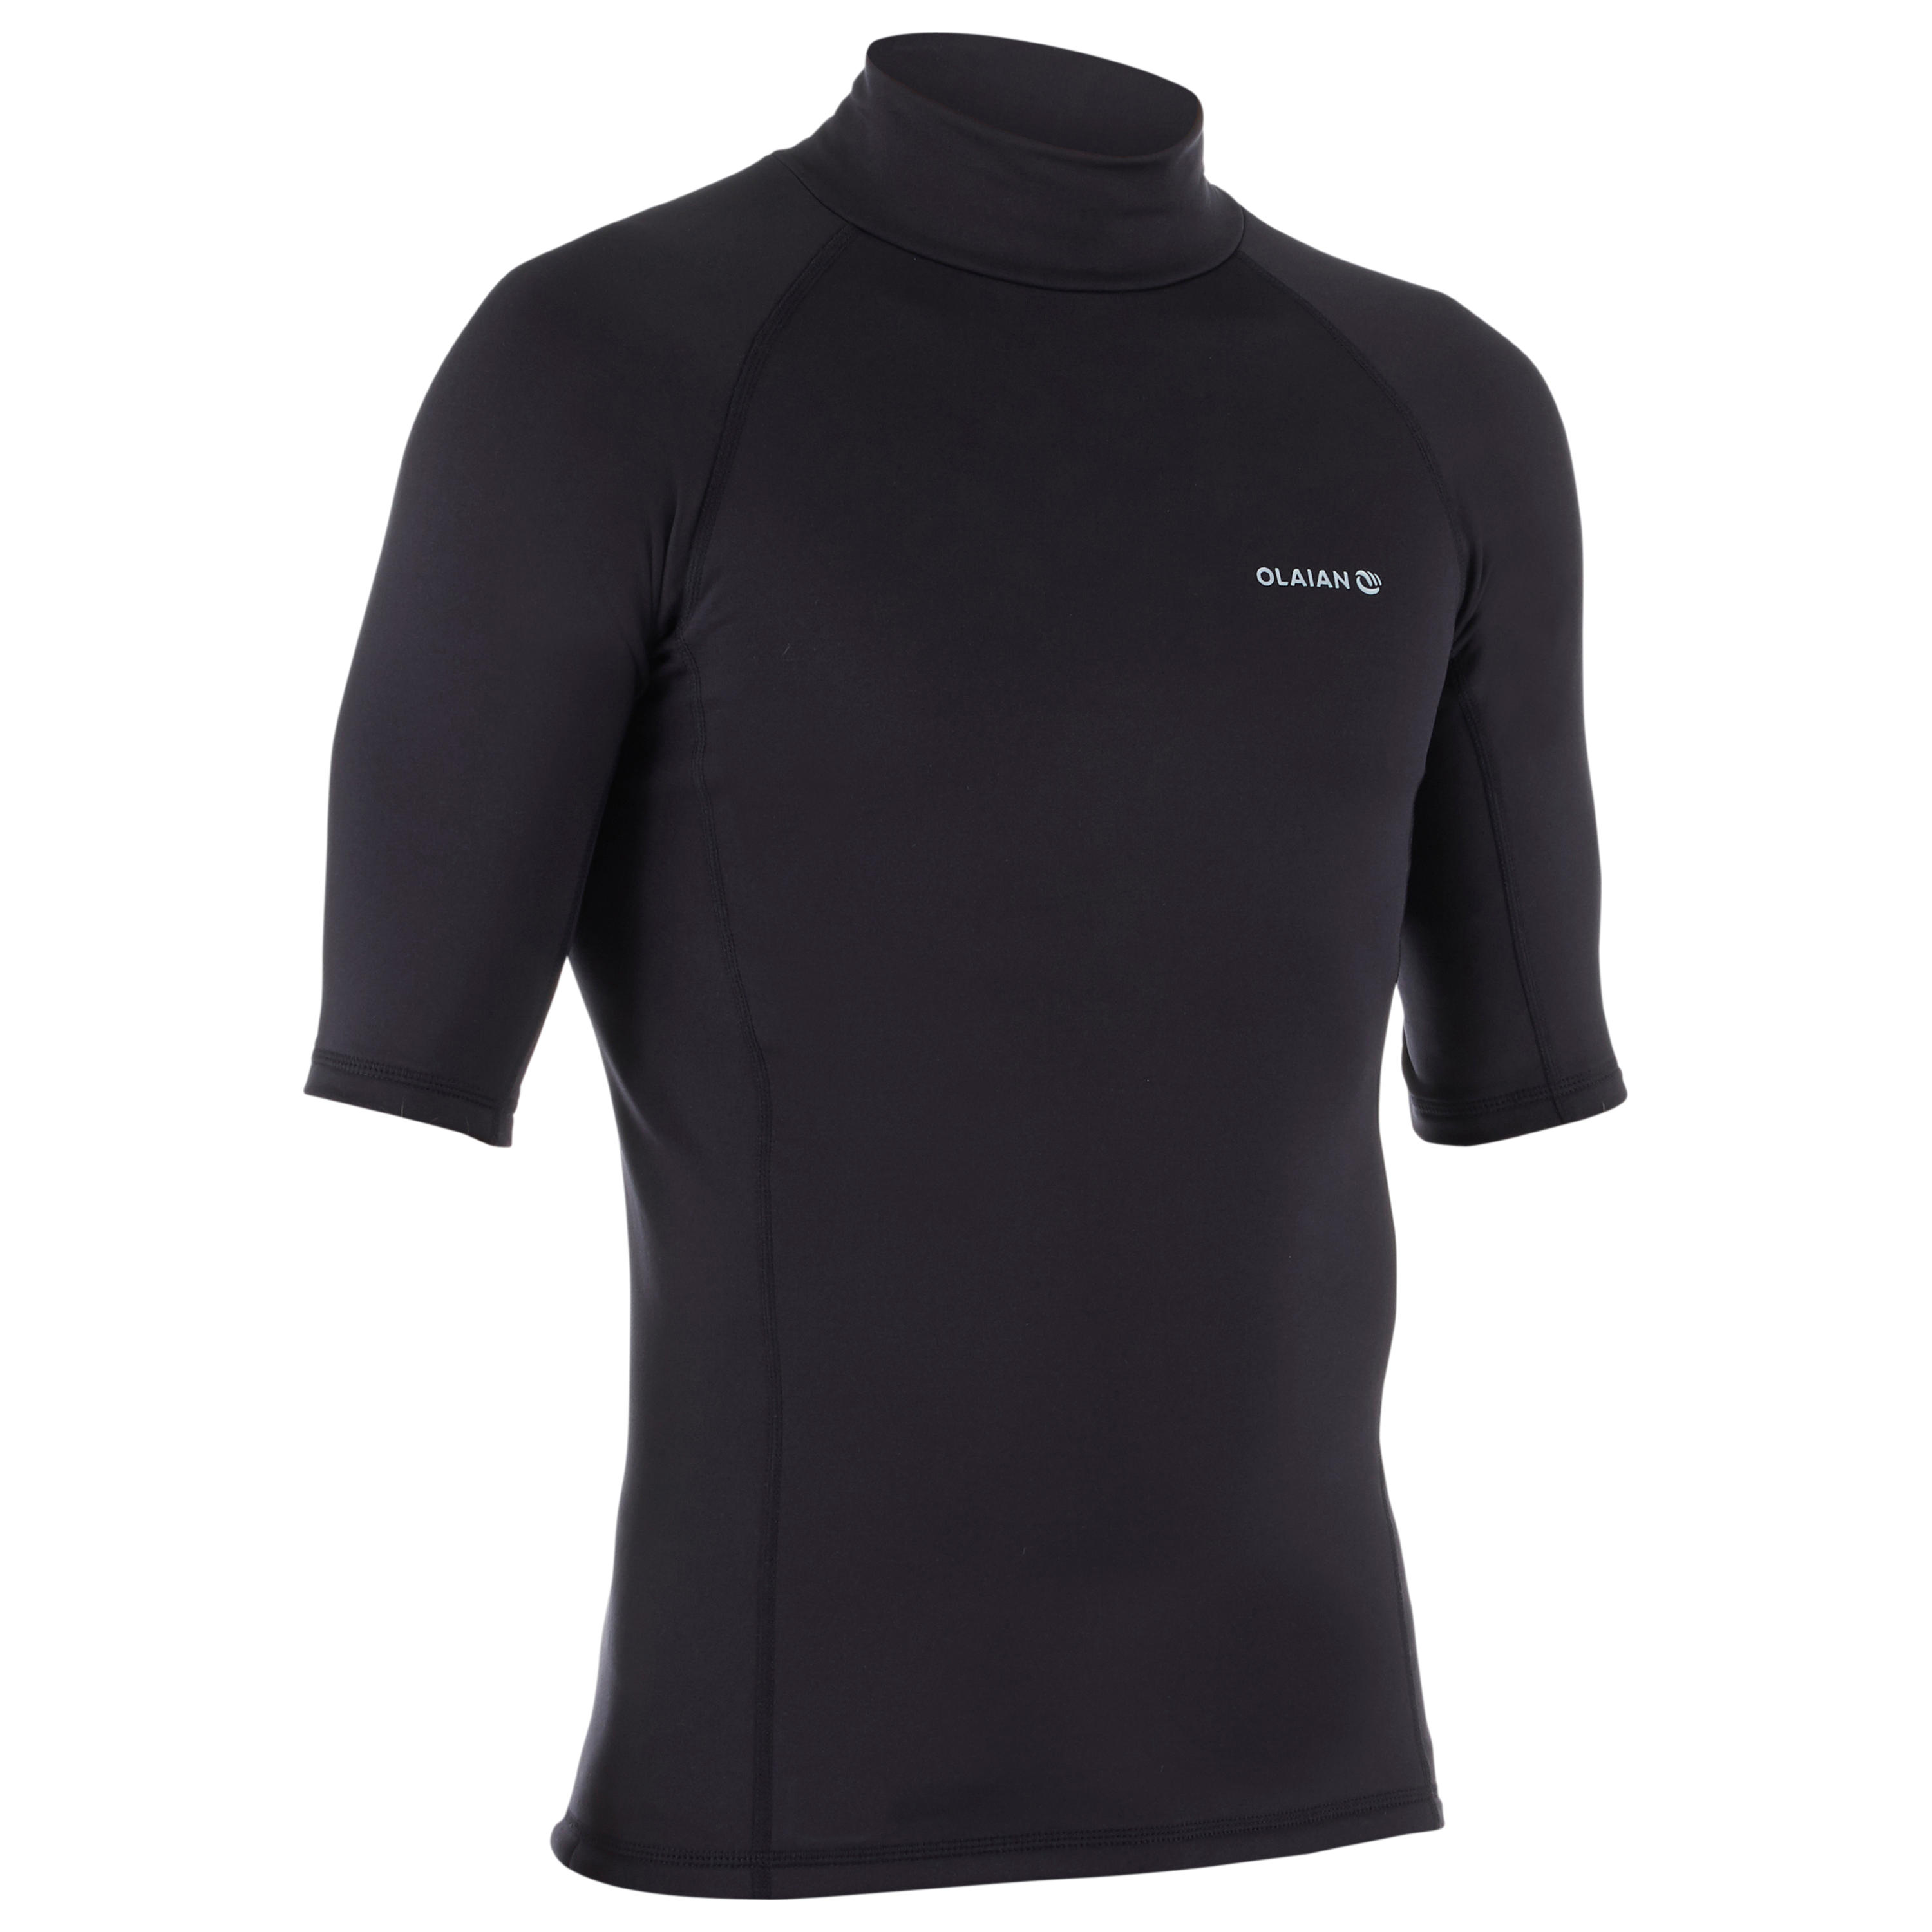 Pánske hrejivé tričko 900 proti uv žiareniu s krátkym rukávom na surf čierne ČIERNA XS